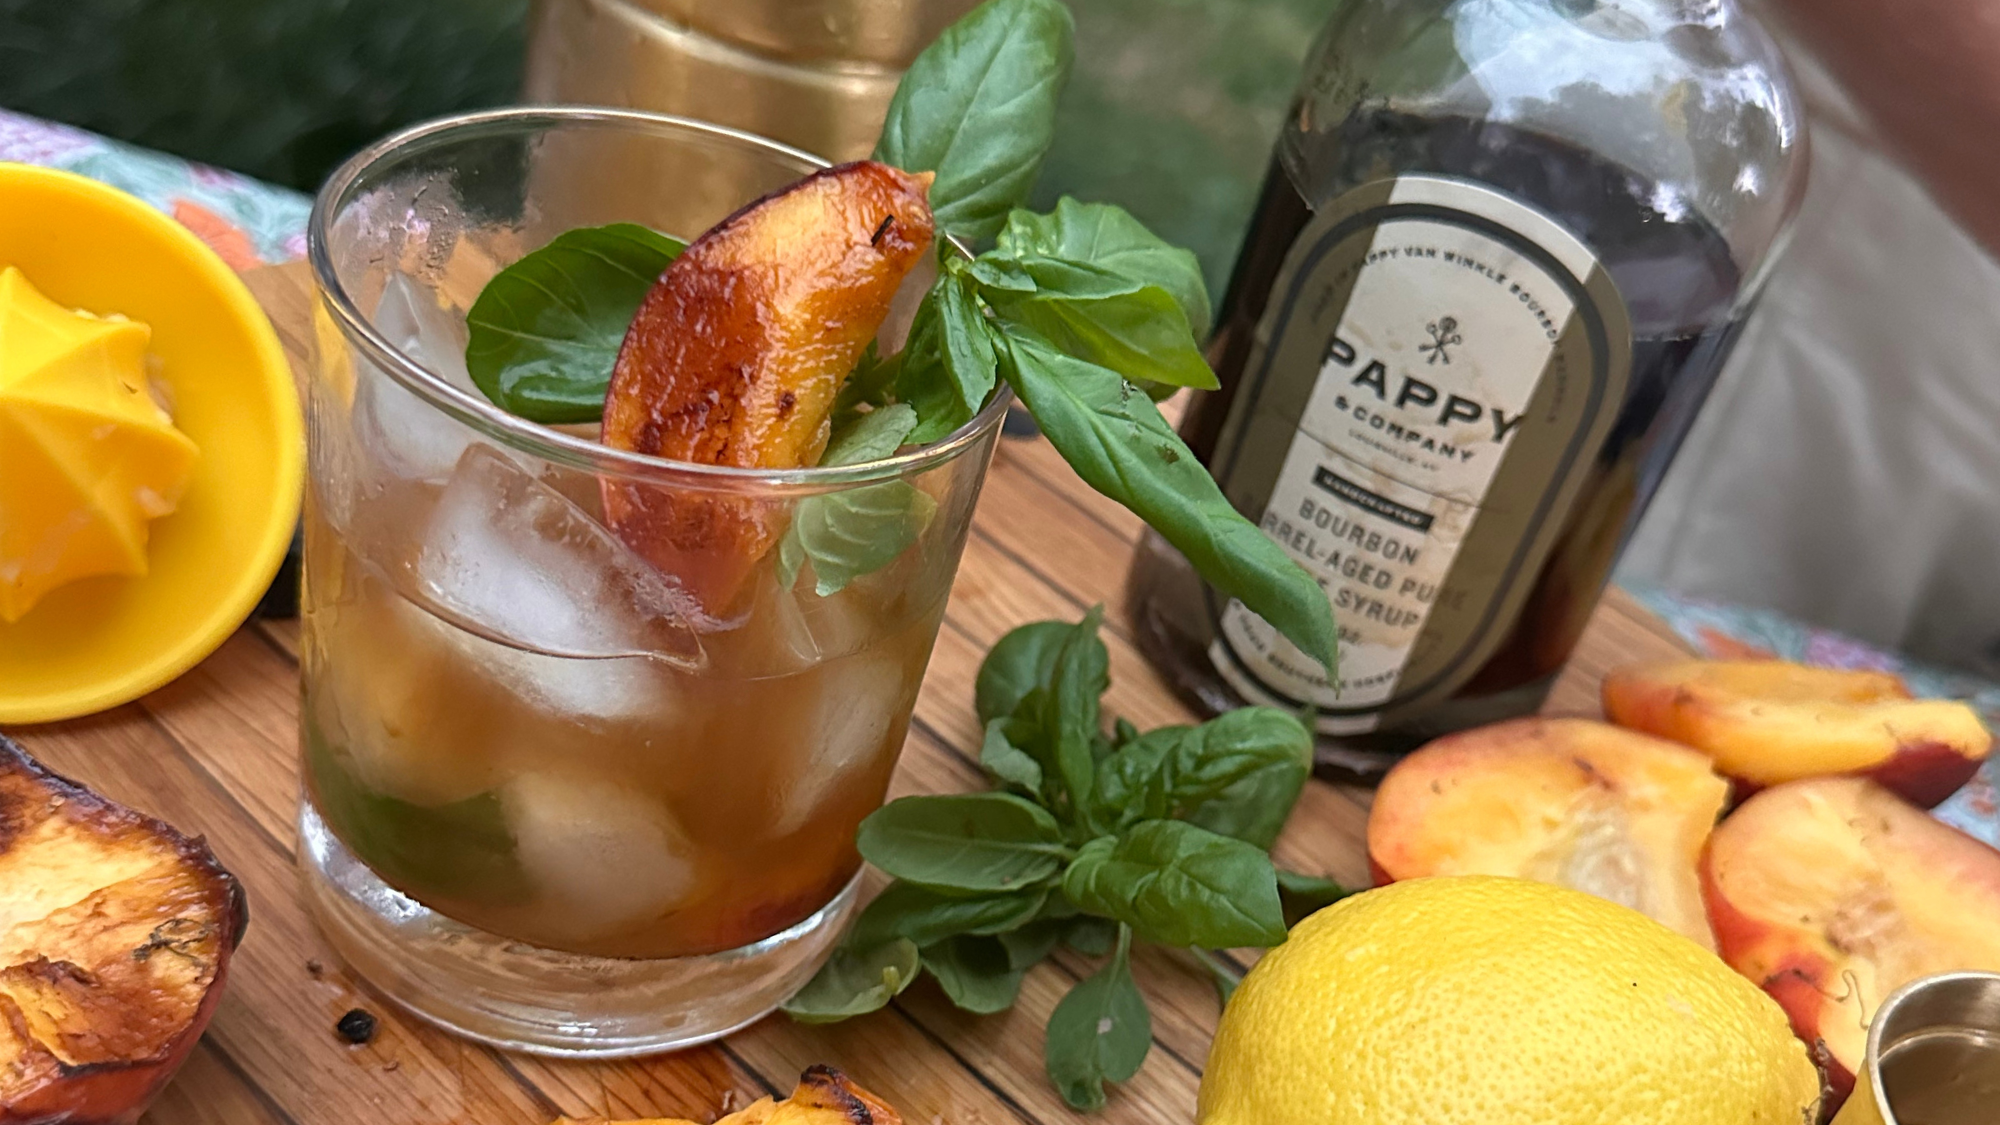 Distilled: Smoky Peach Bourbon Summer Sipper